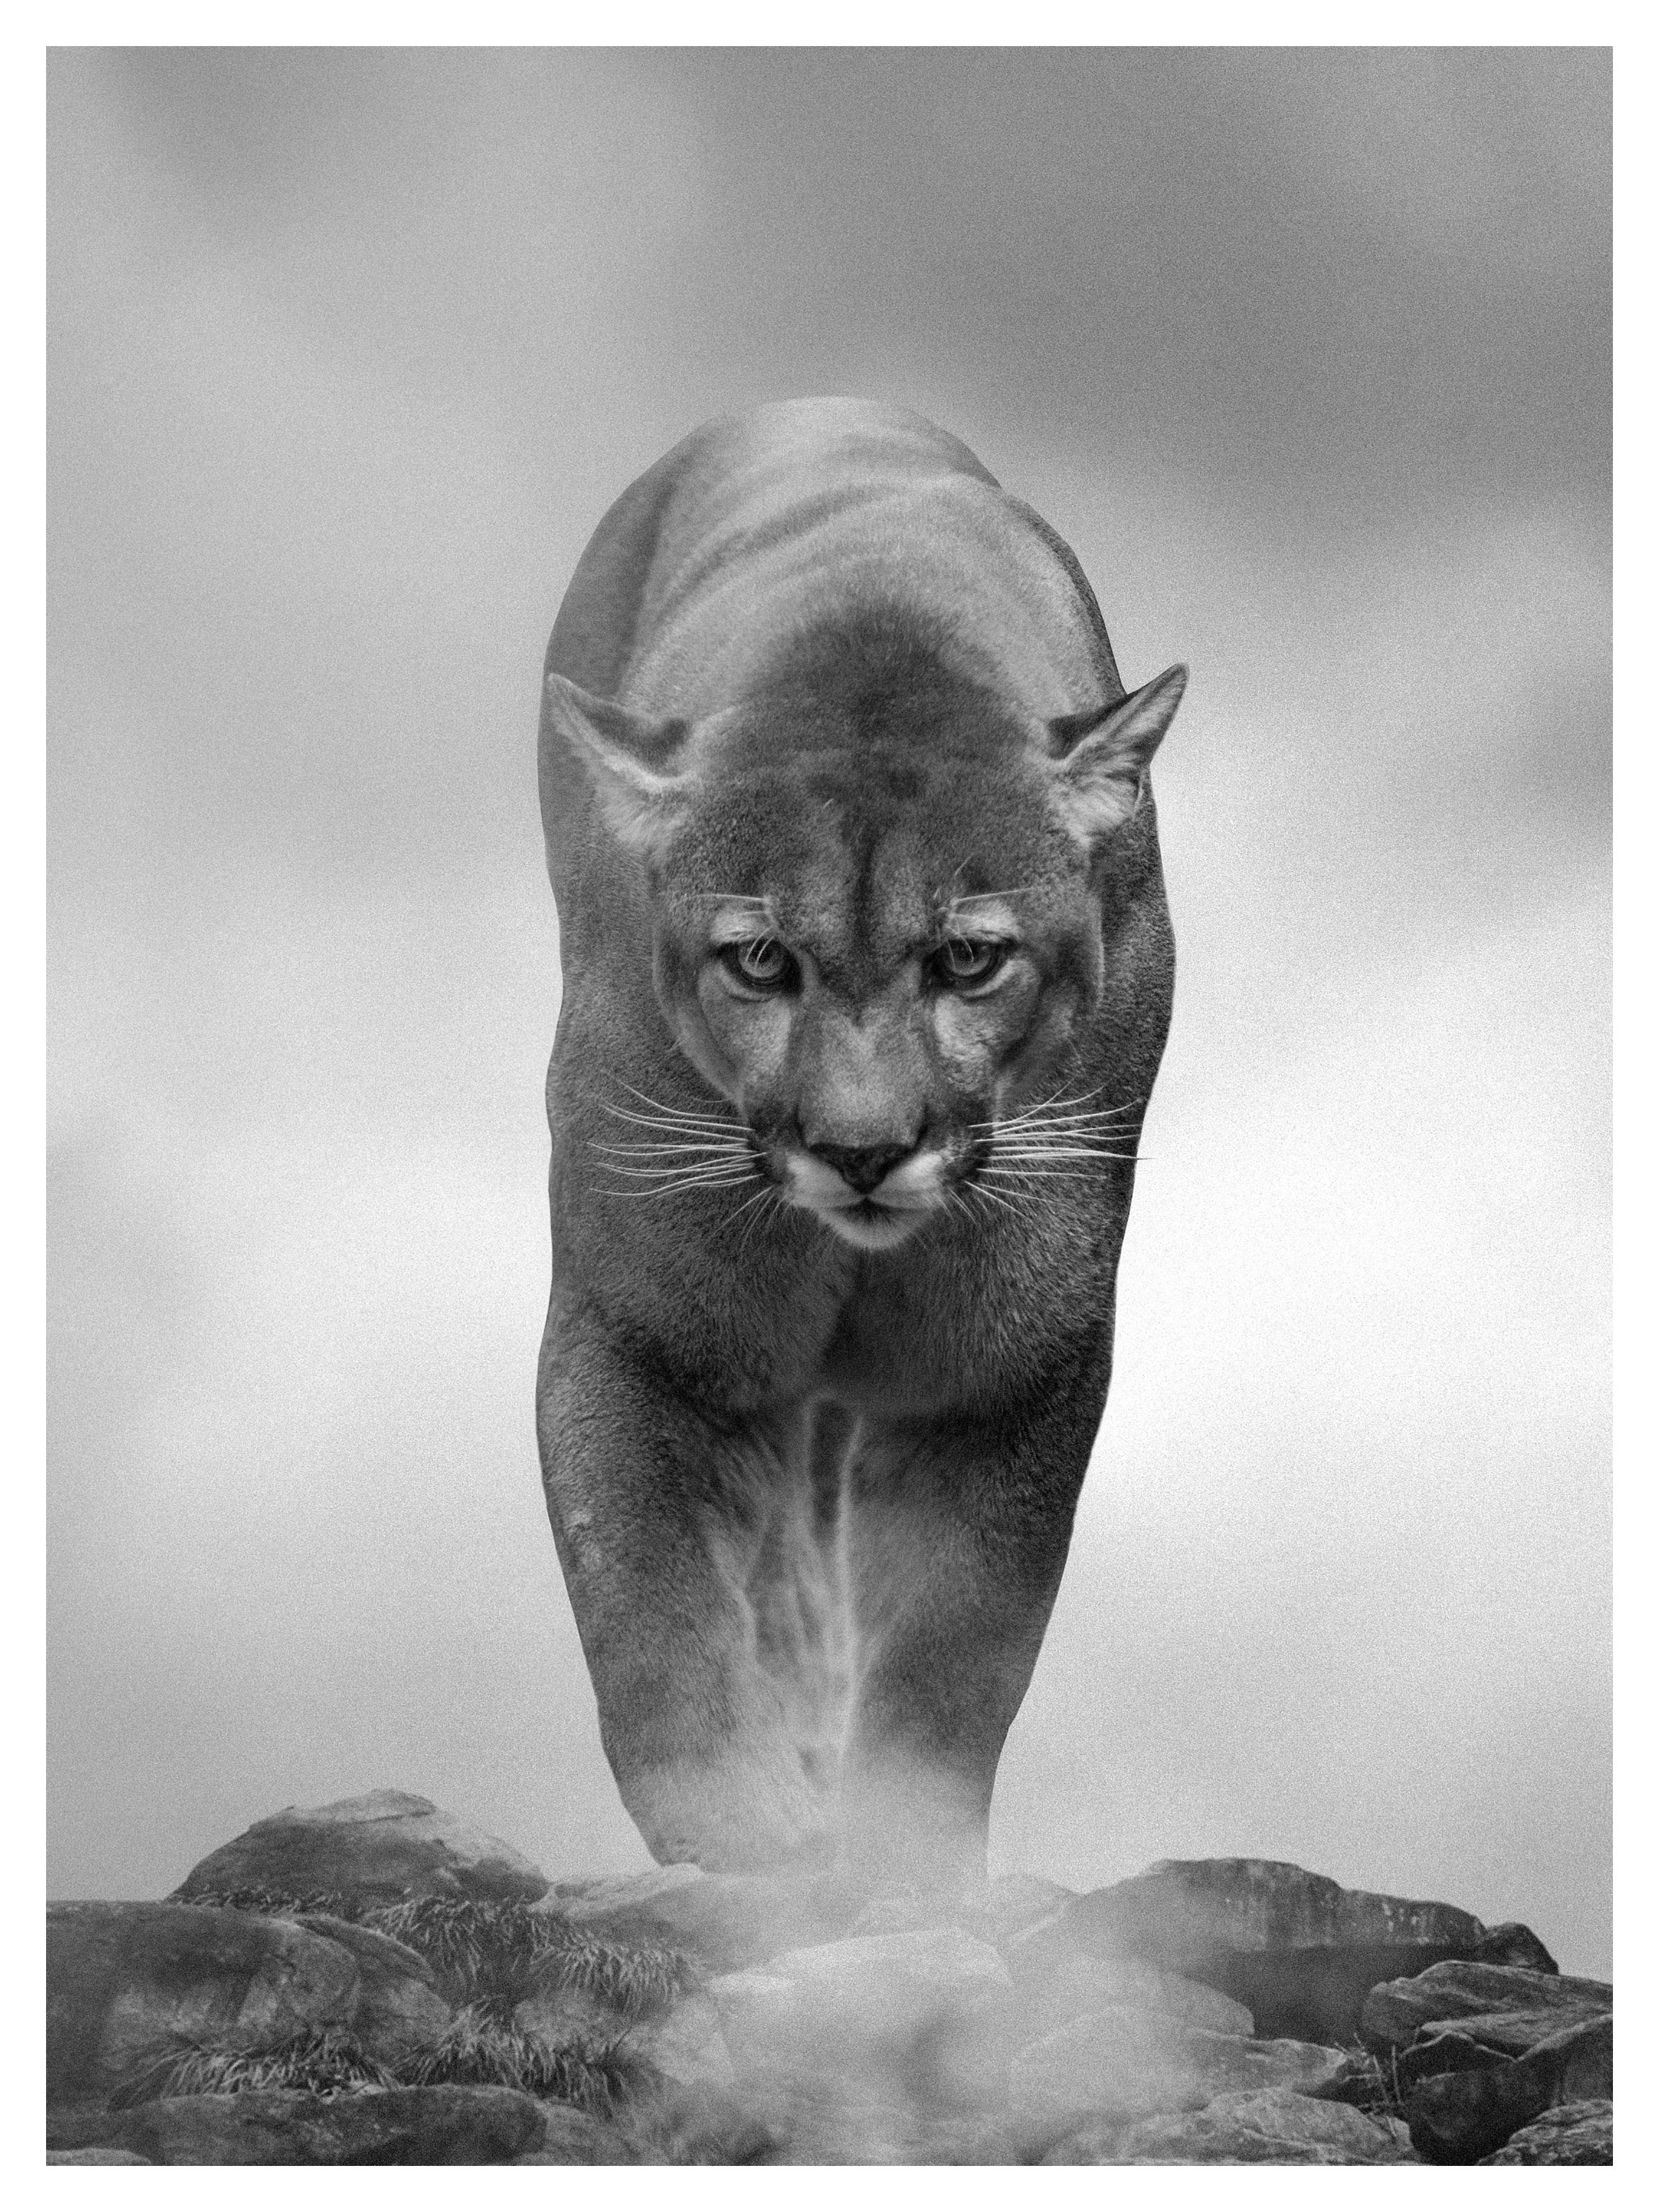 Animal Print Shane Russeck - 60x40 "Le roi de la montagne"  Photographie noir et blanc, Cougar, lion de montagne